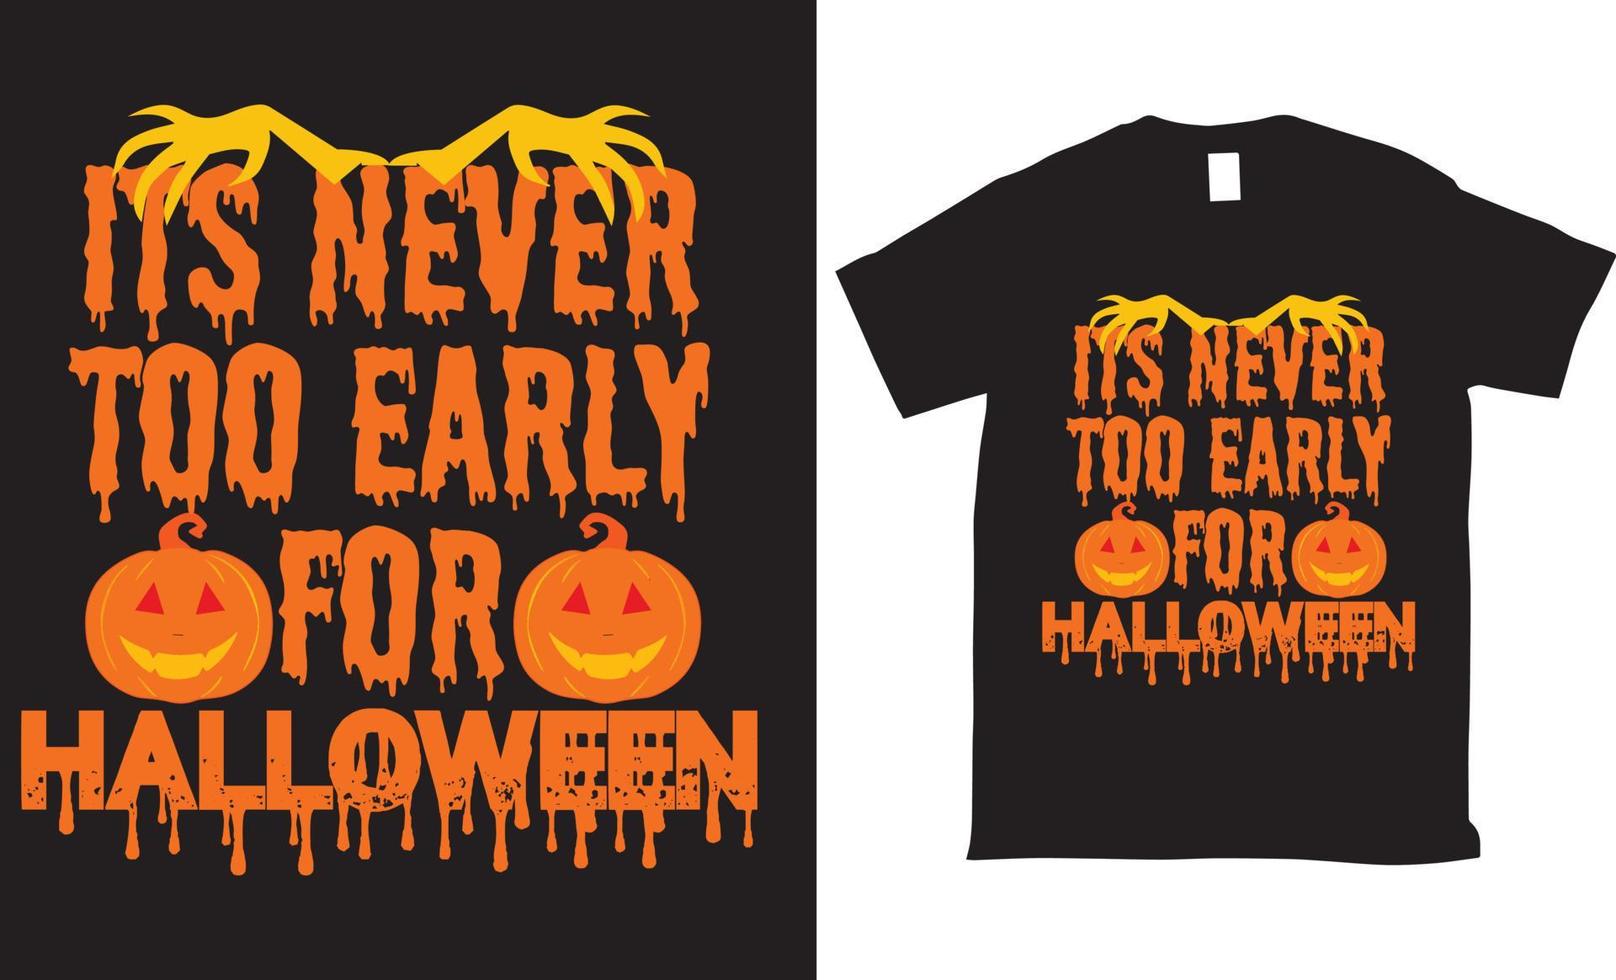 haar nooit te vroeg voor halloween t-shirt ontwerp vector